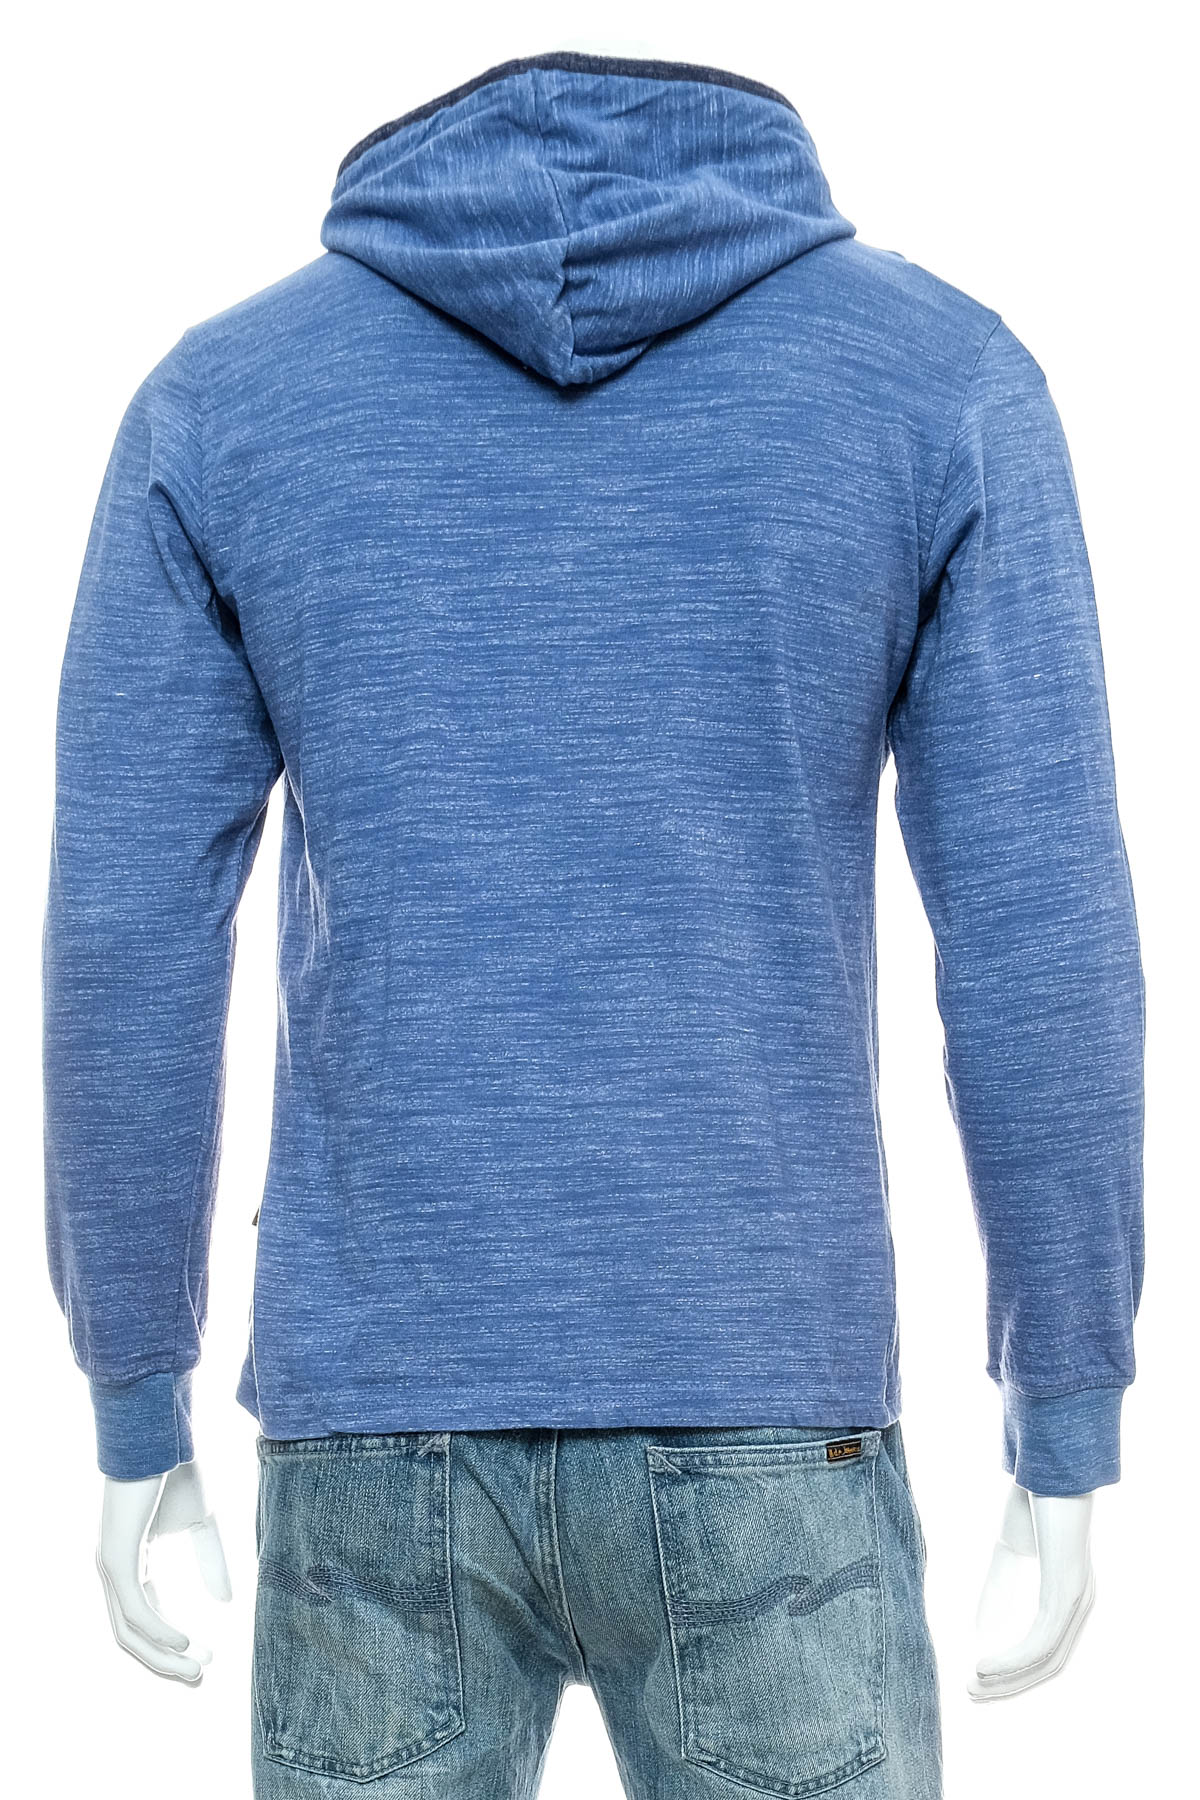 Men's sweatshirt - Lee - 1